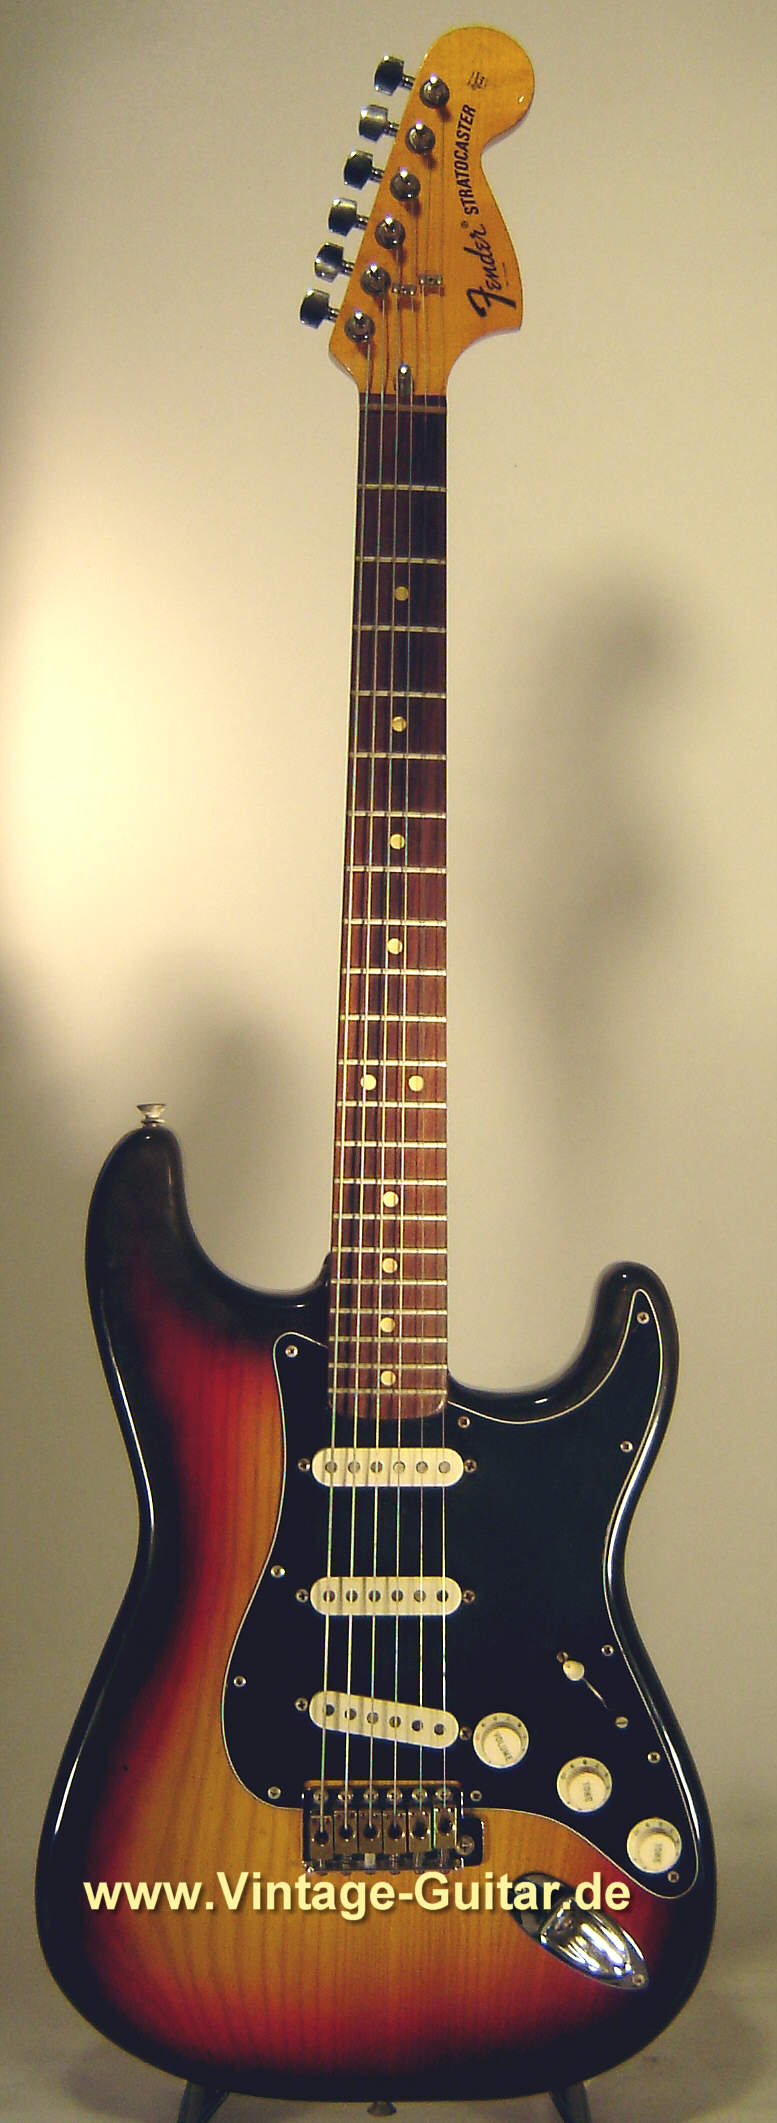 Fender-Stratocaster-1976-sunburst-black-white-1.jpg